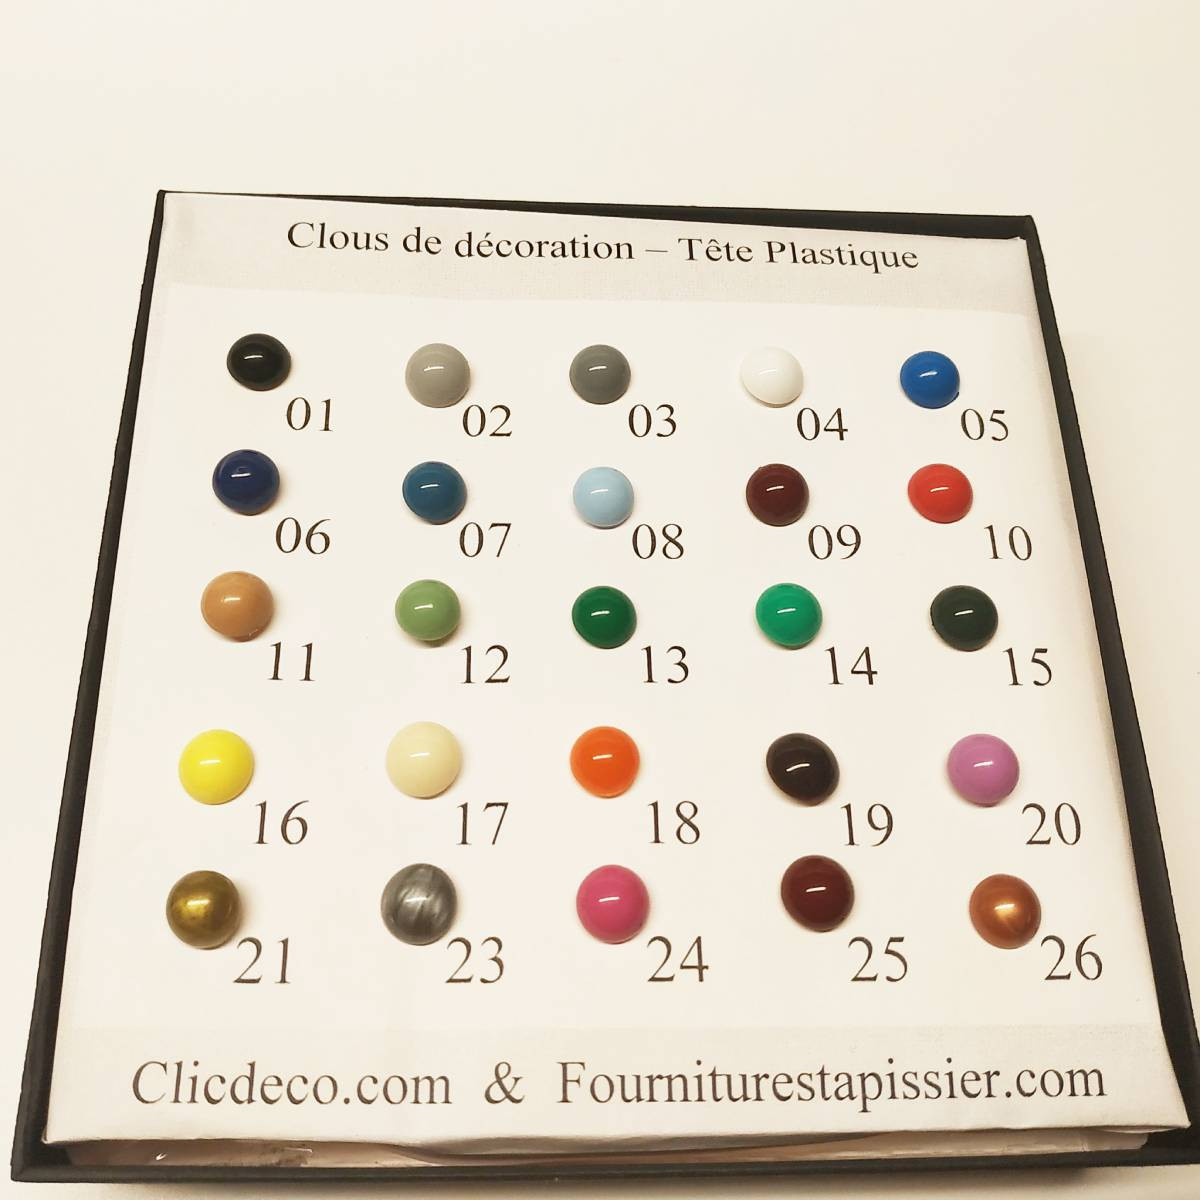 100 clous de couleur - Tête plastique - Fiche technique